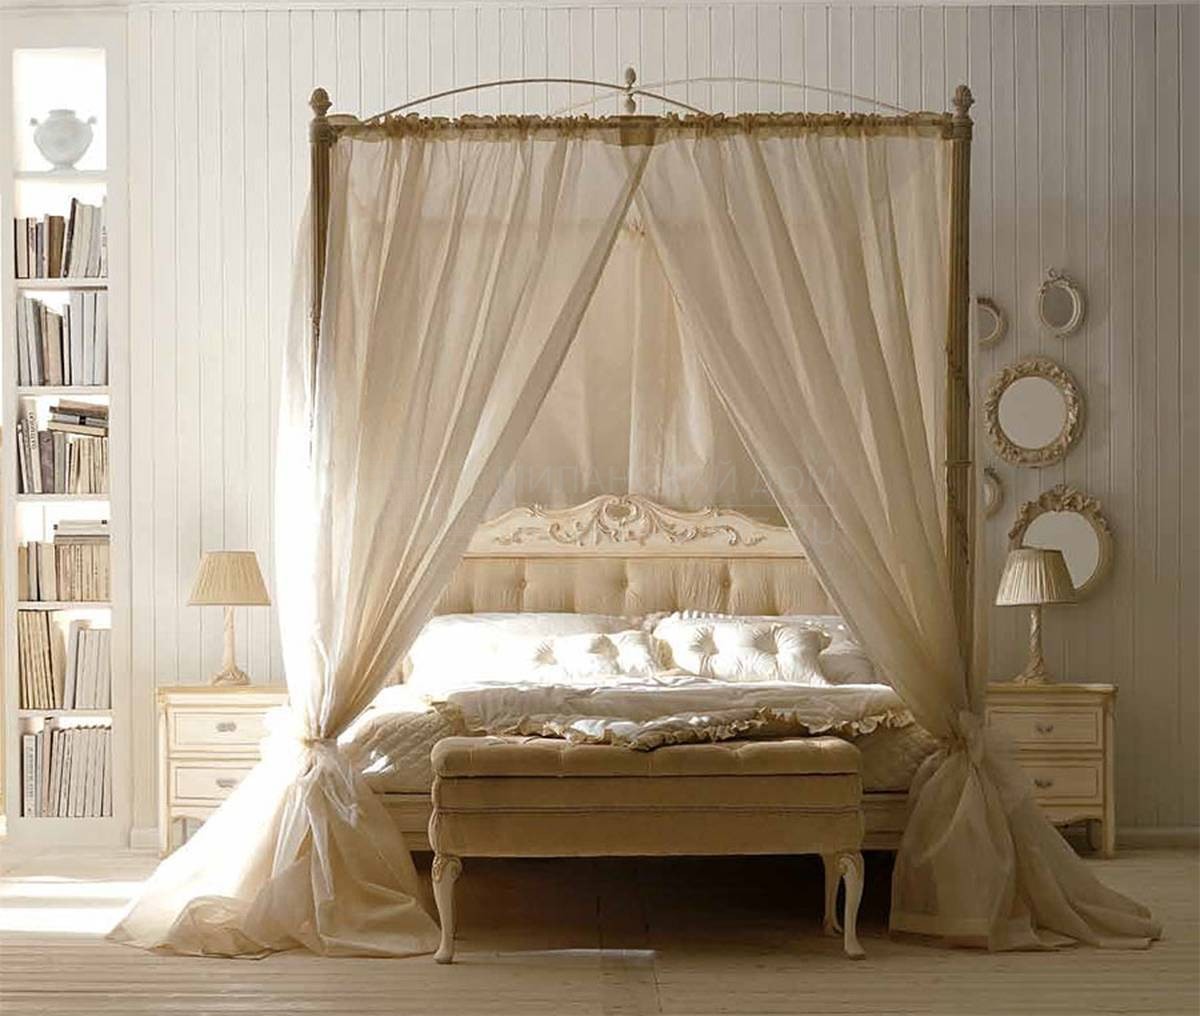 Кровать с балдахином Art. 3010BAL B,C из Италии фабрики SAVIO FIRMINO